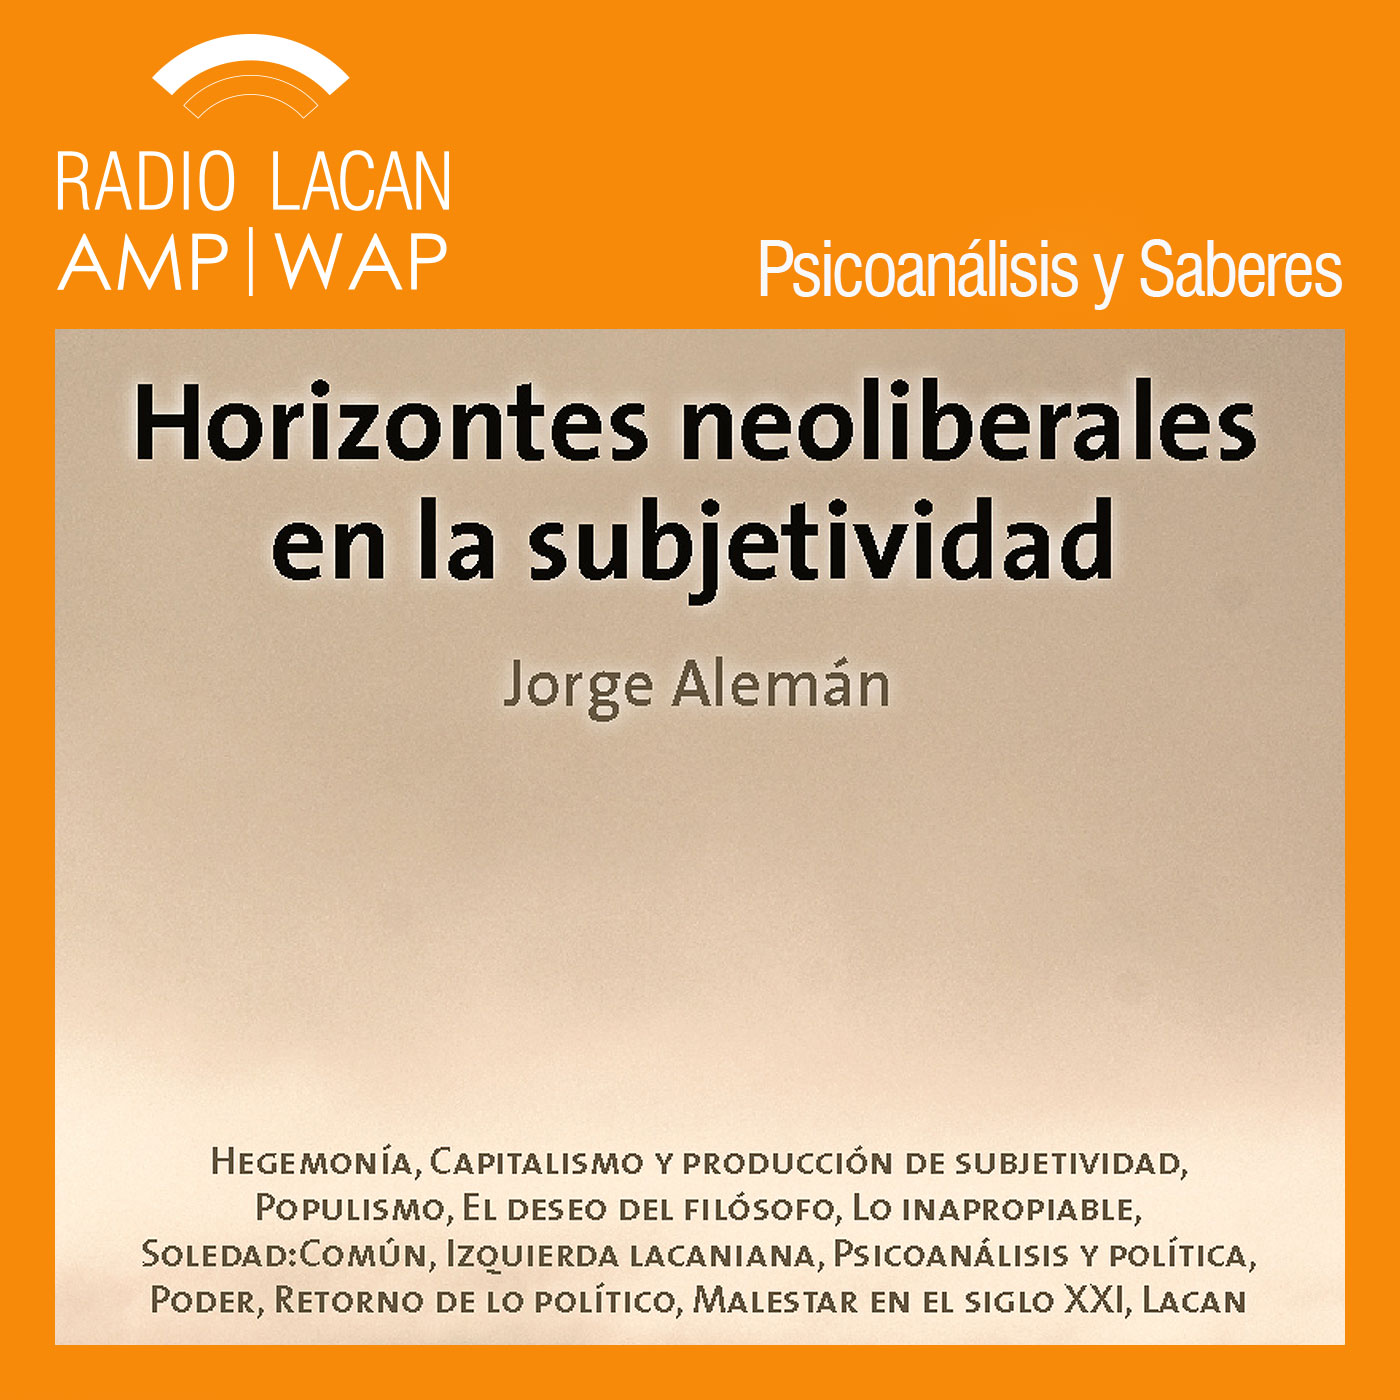 RadioLacan.com | Presentación del libro de Jorge Alemán: Horizontes neoliberales en la subjetividad